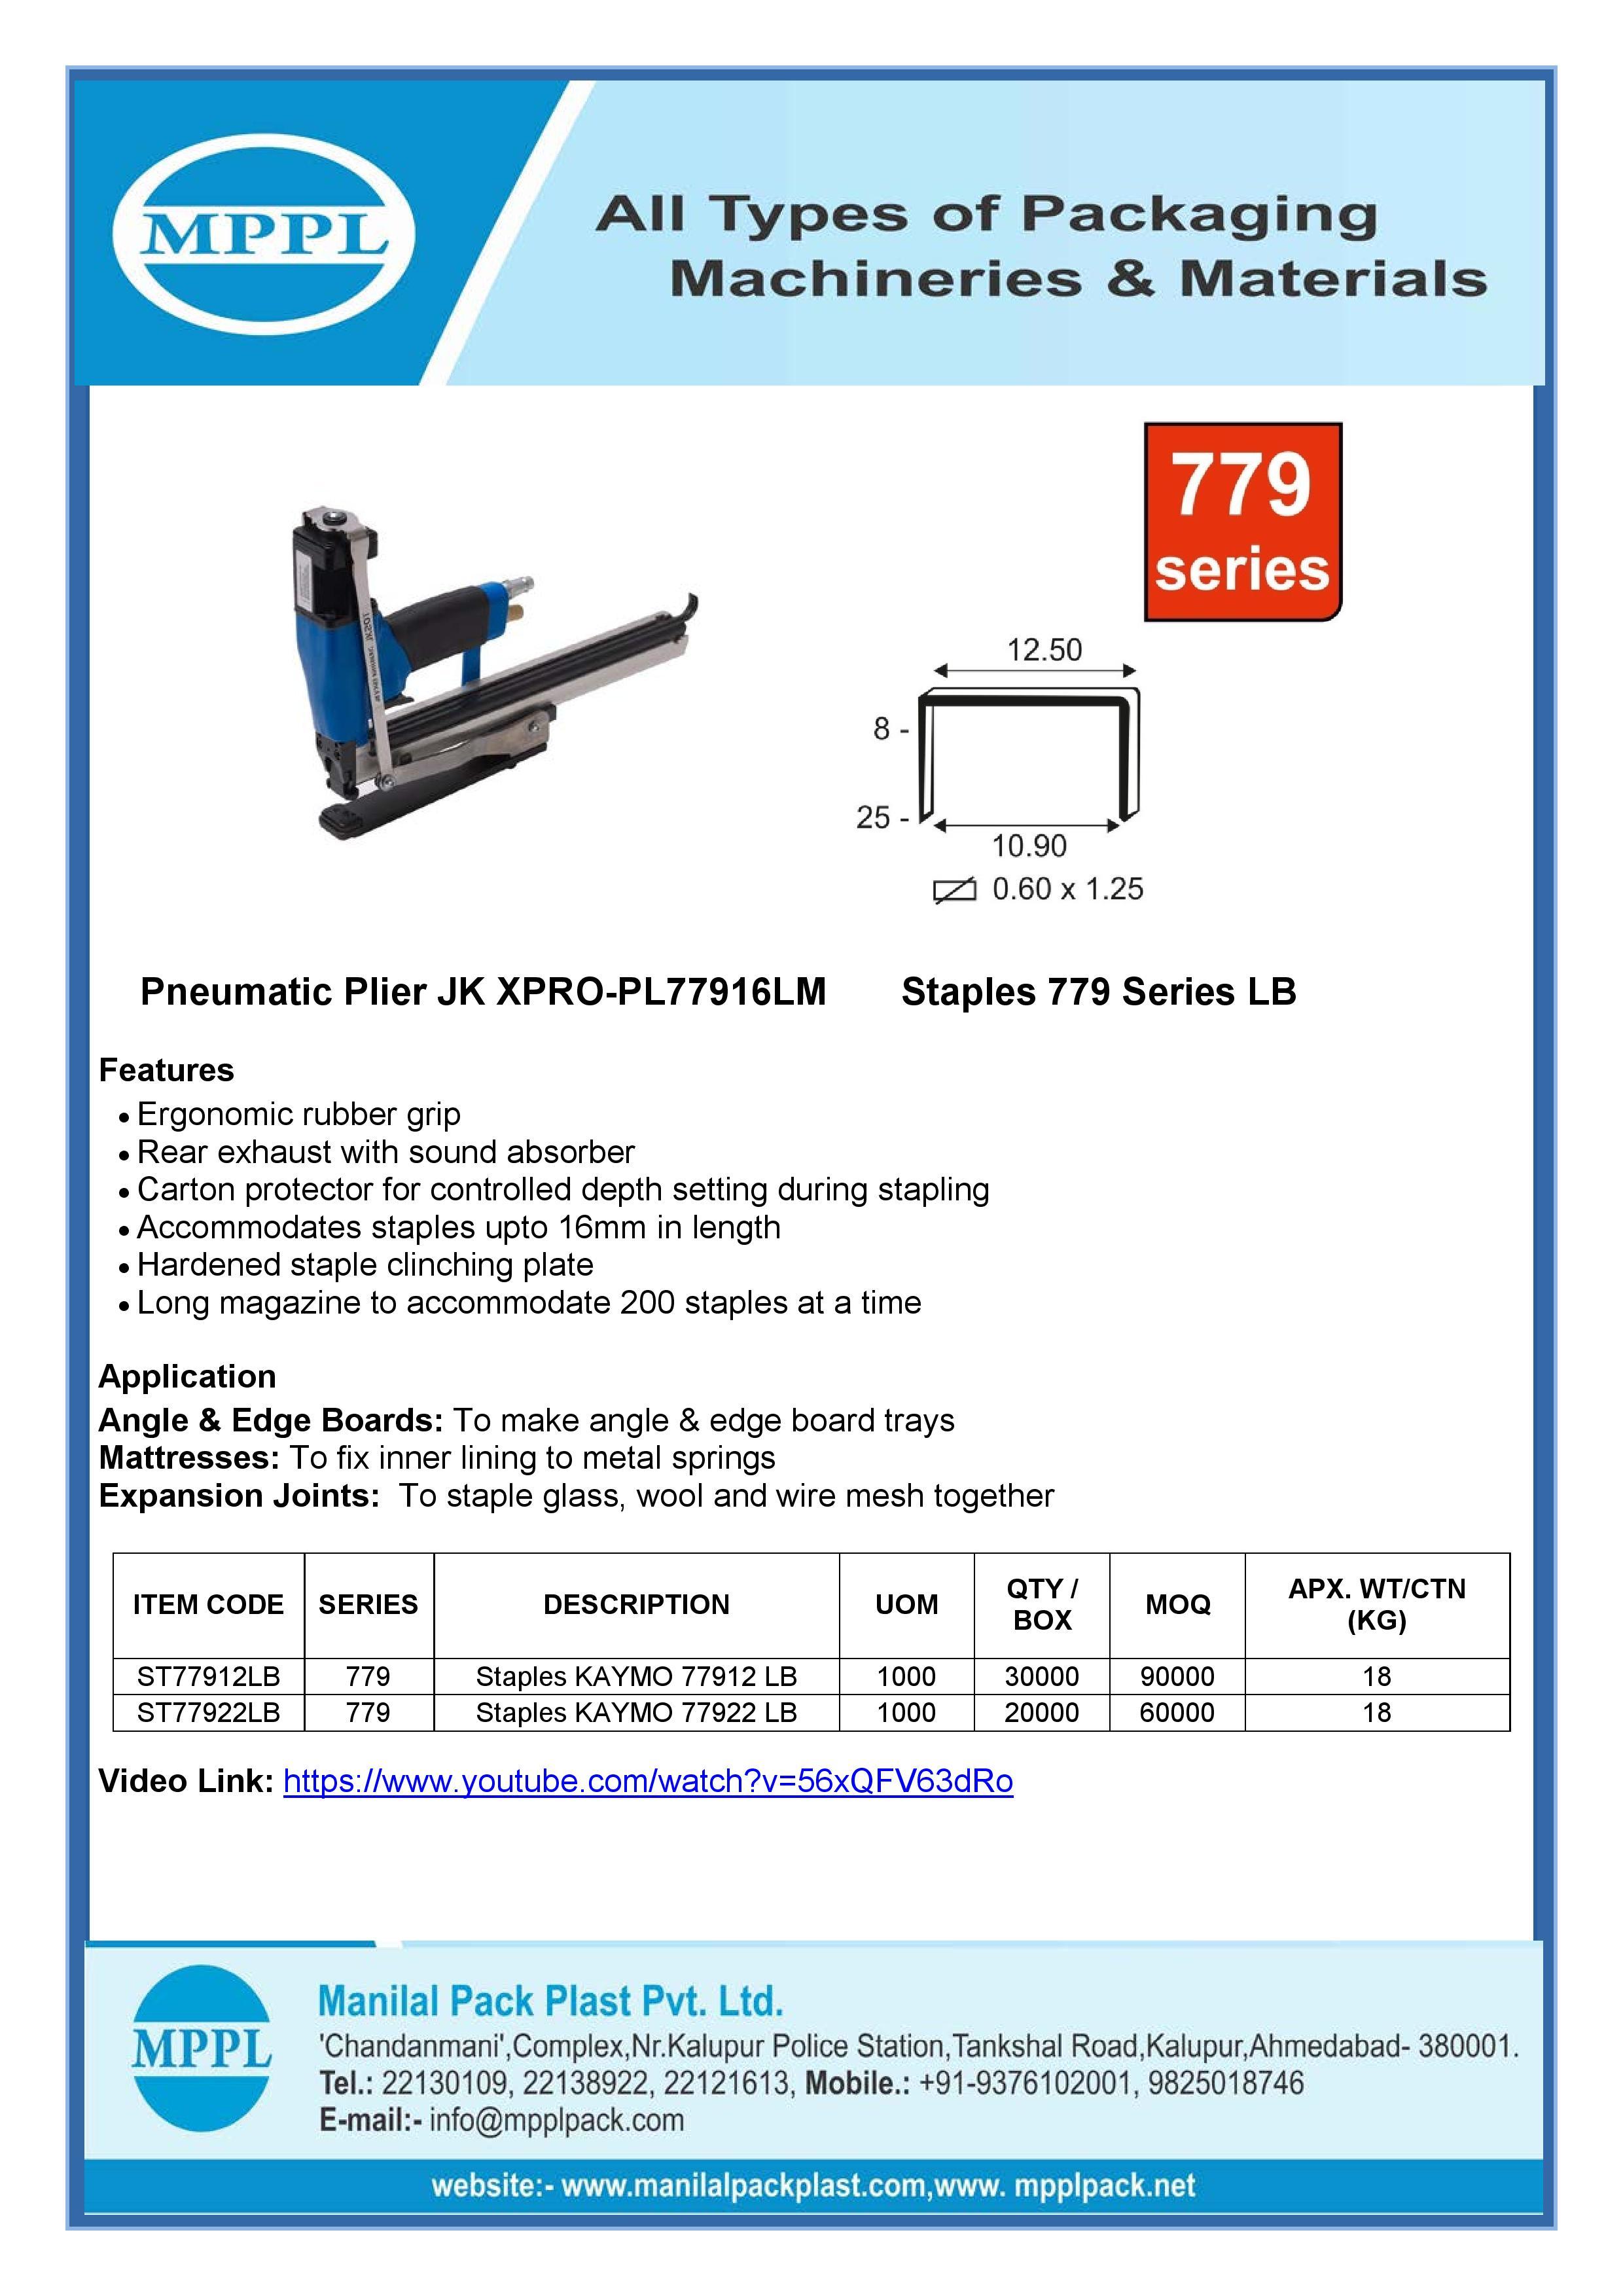 Pneumatic Plier JK XPRO-PL77916LM